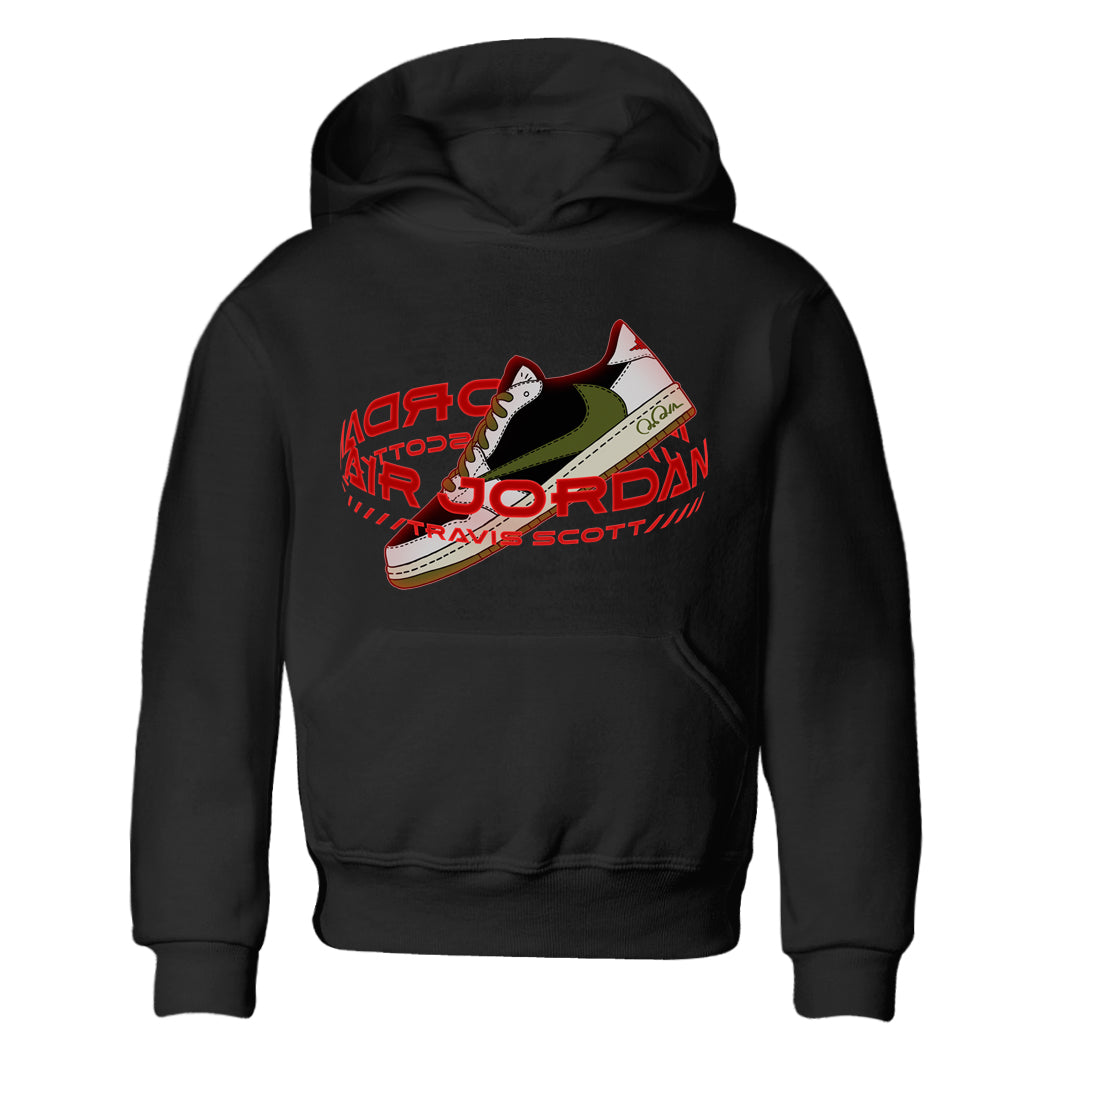 Jordan 1 Travis Scott Olive Sneaker Tees Drip Gear Zone Warping Space Sneaker Tees Jordan 1 Travis Scott Olive Shirt Kids Shirts